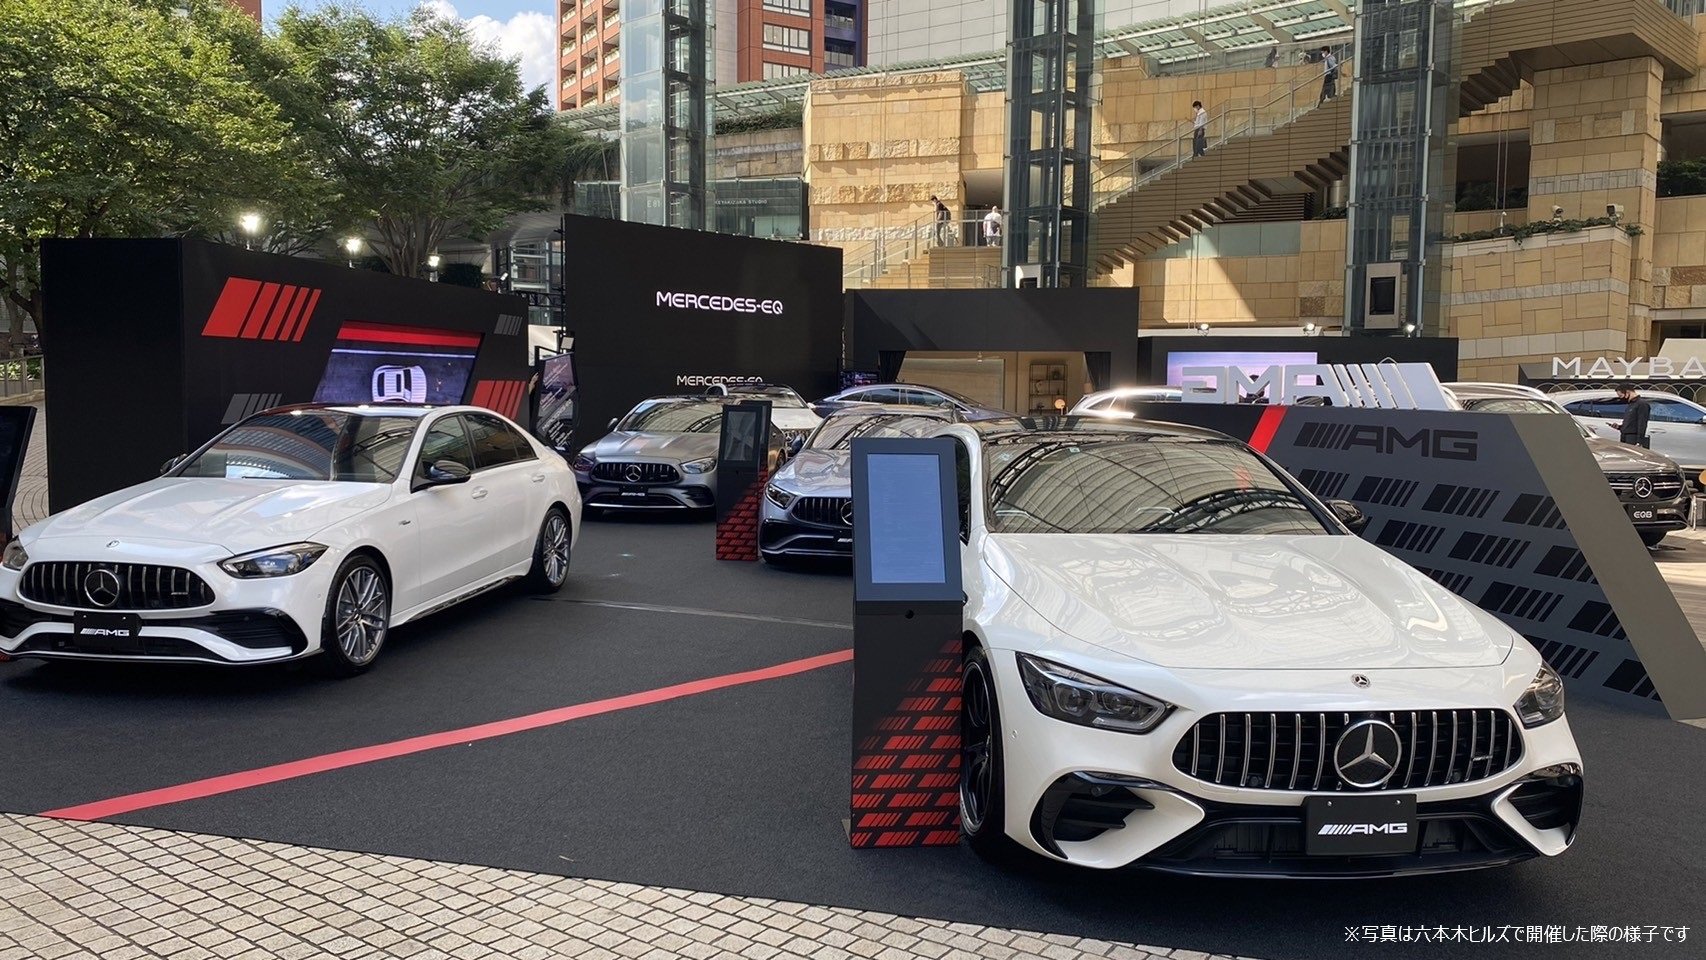 Mercedes-Benz Brand Exhibition